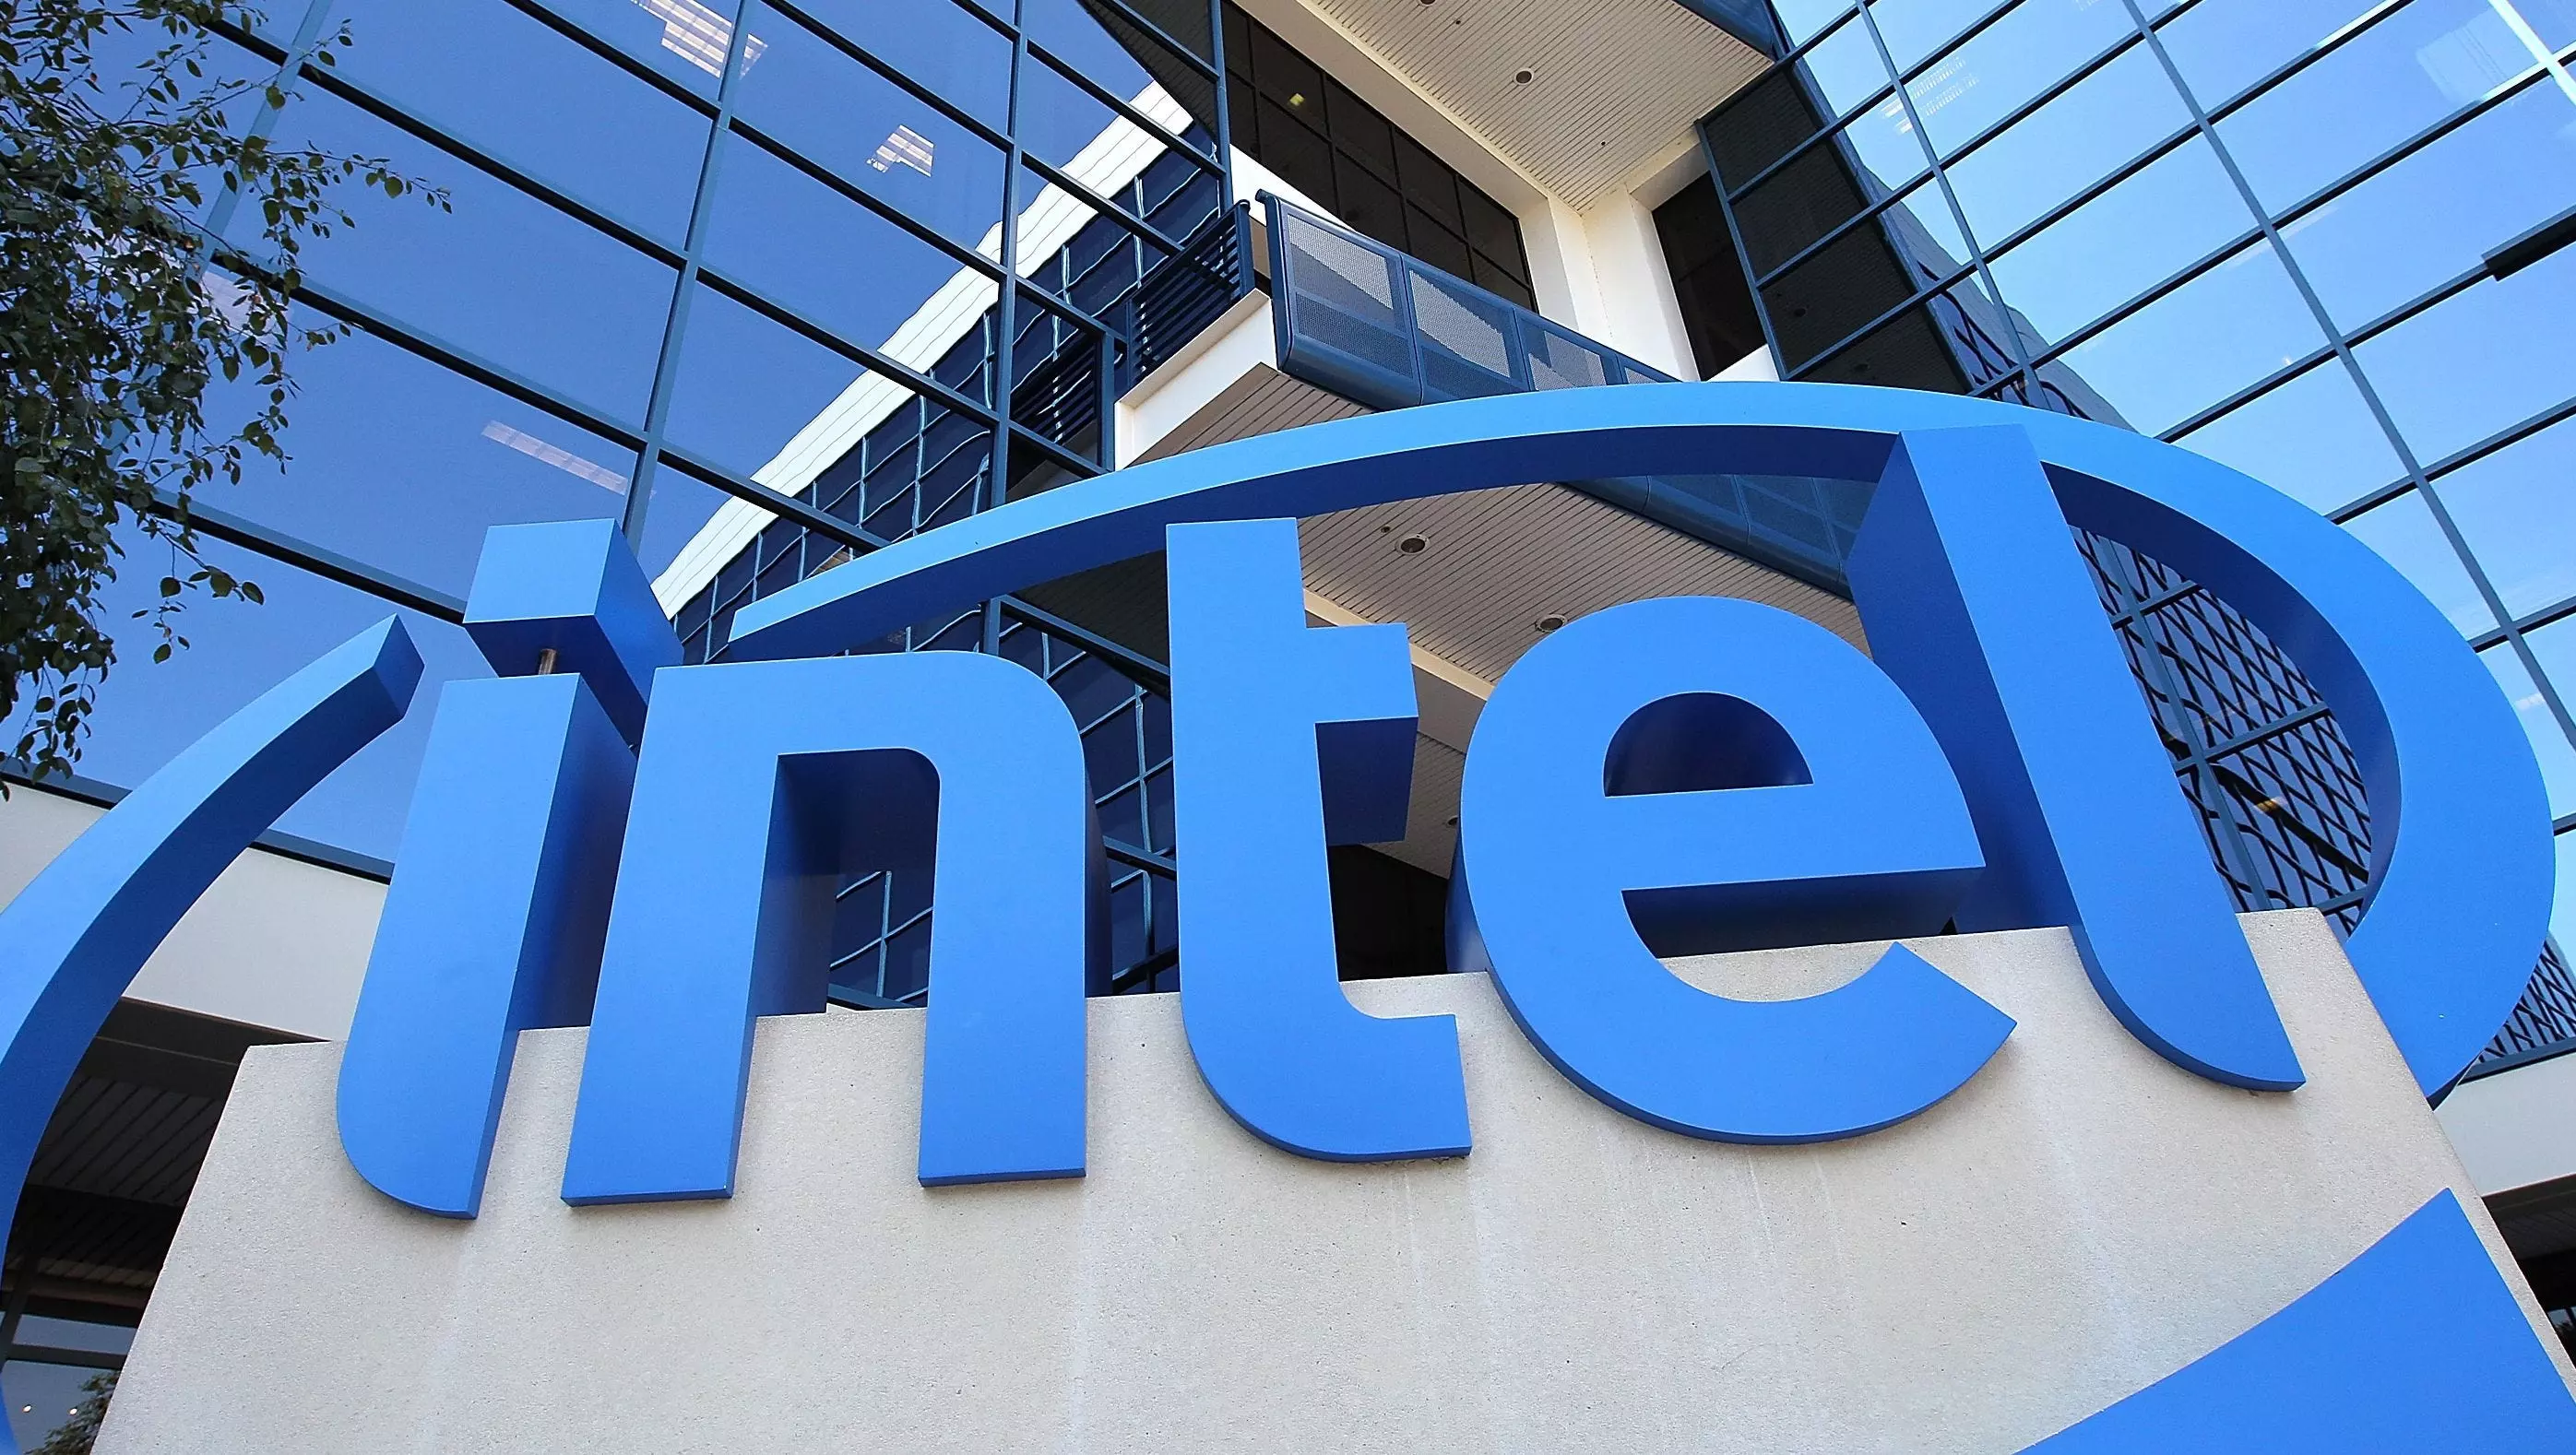 Óriási adatszivárgás az Intelnél: 20 GB-nyi kényes tartalom válhatott elérhetővé